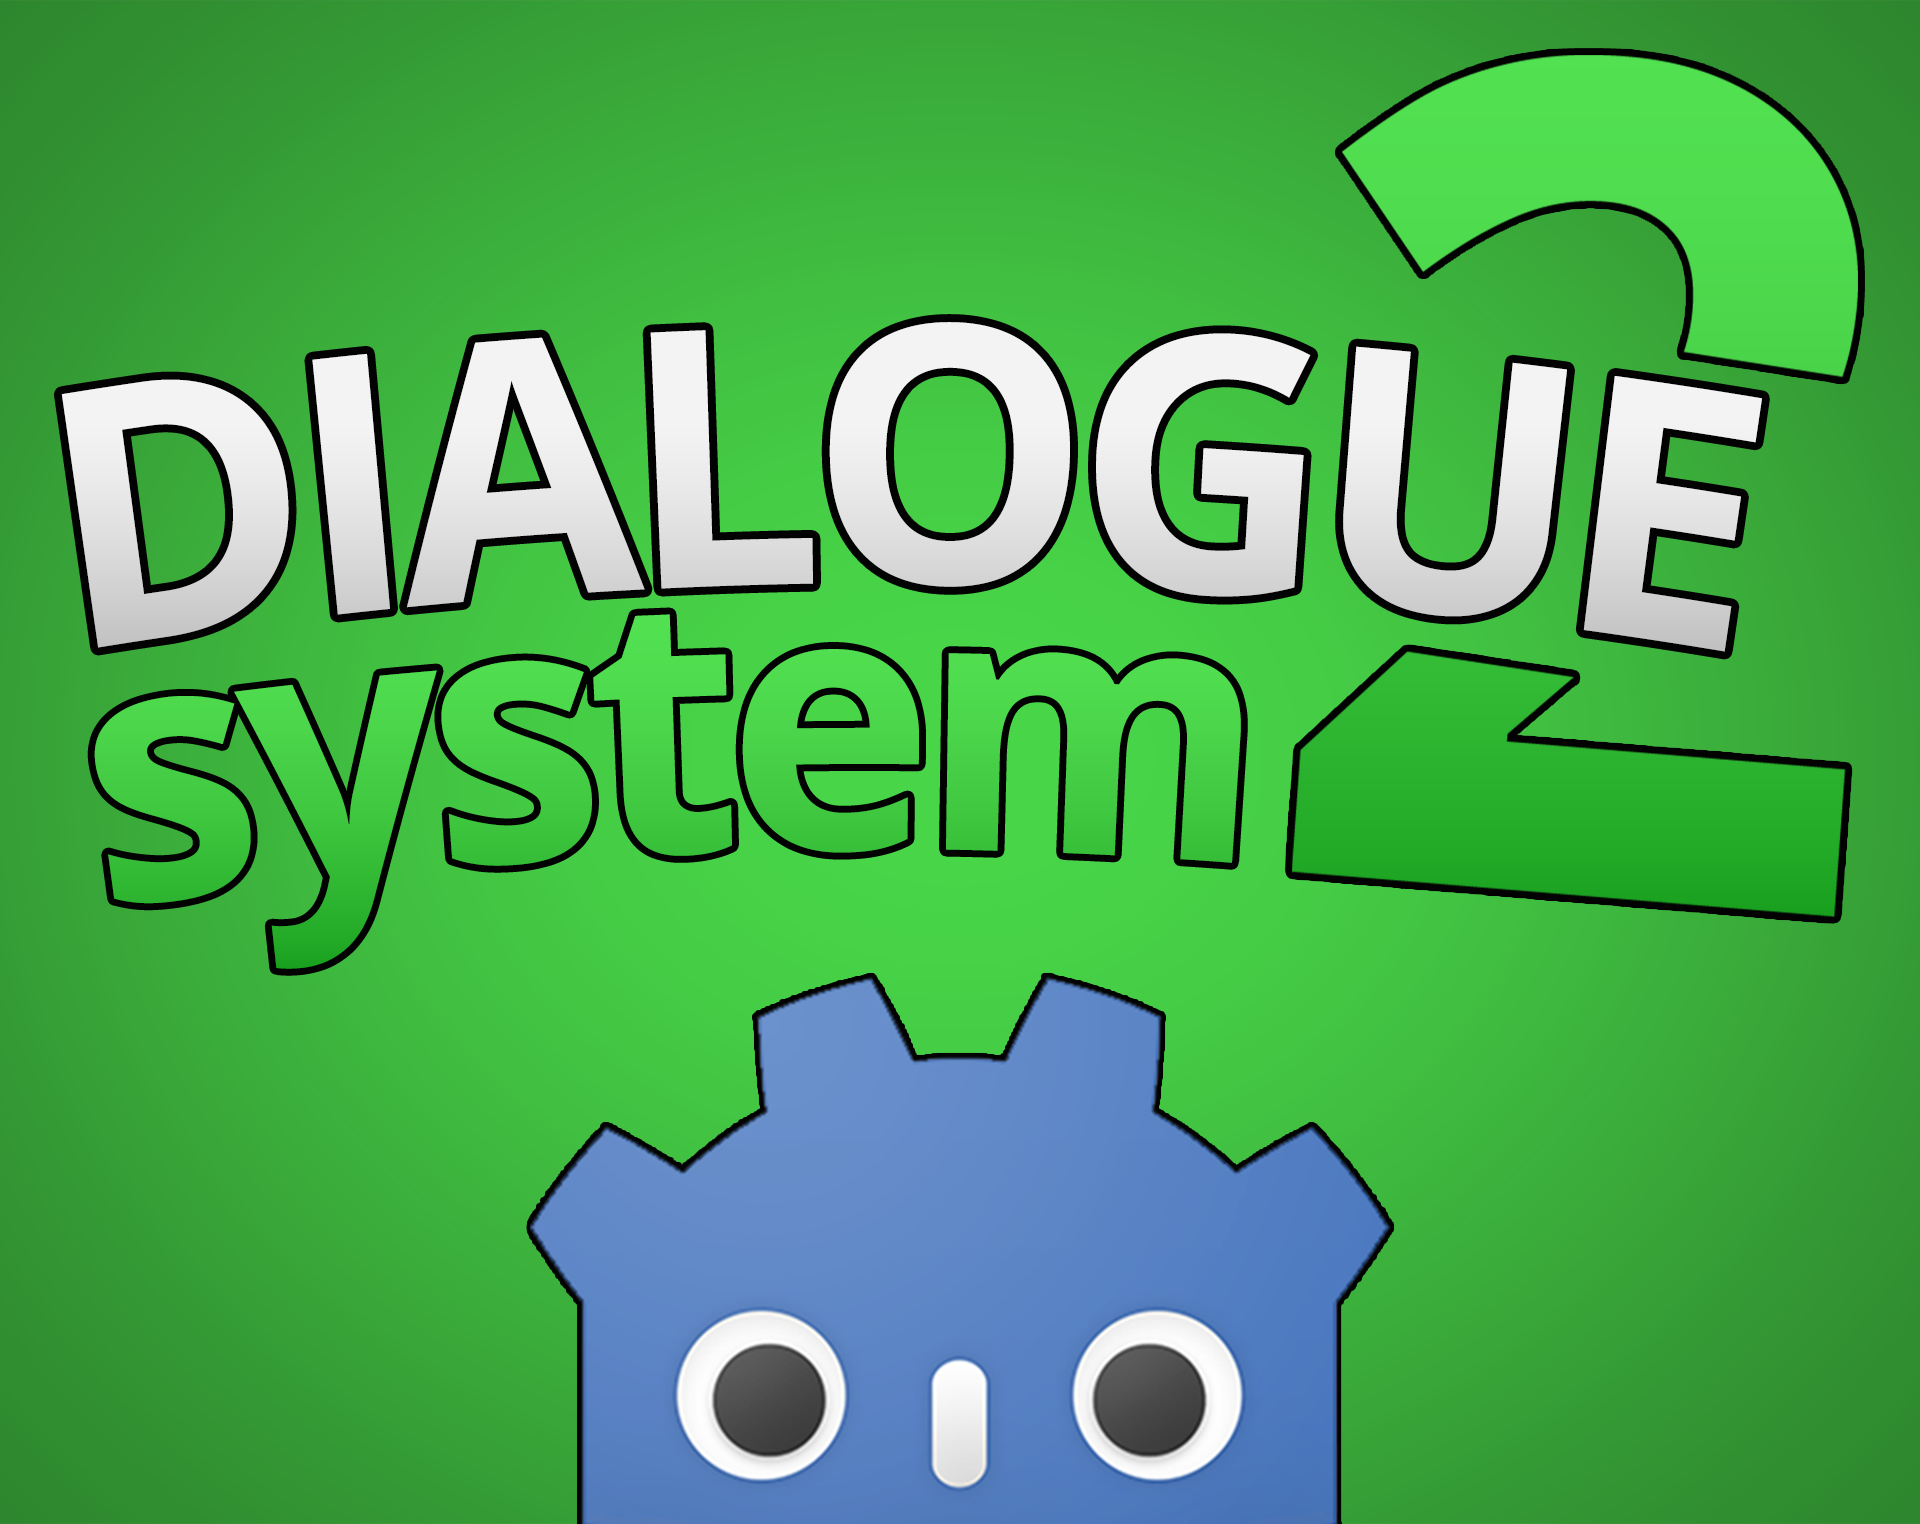 xerxes dialogue system shock 2